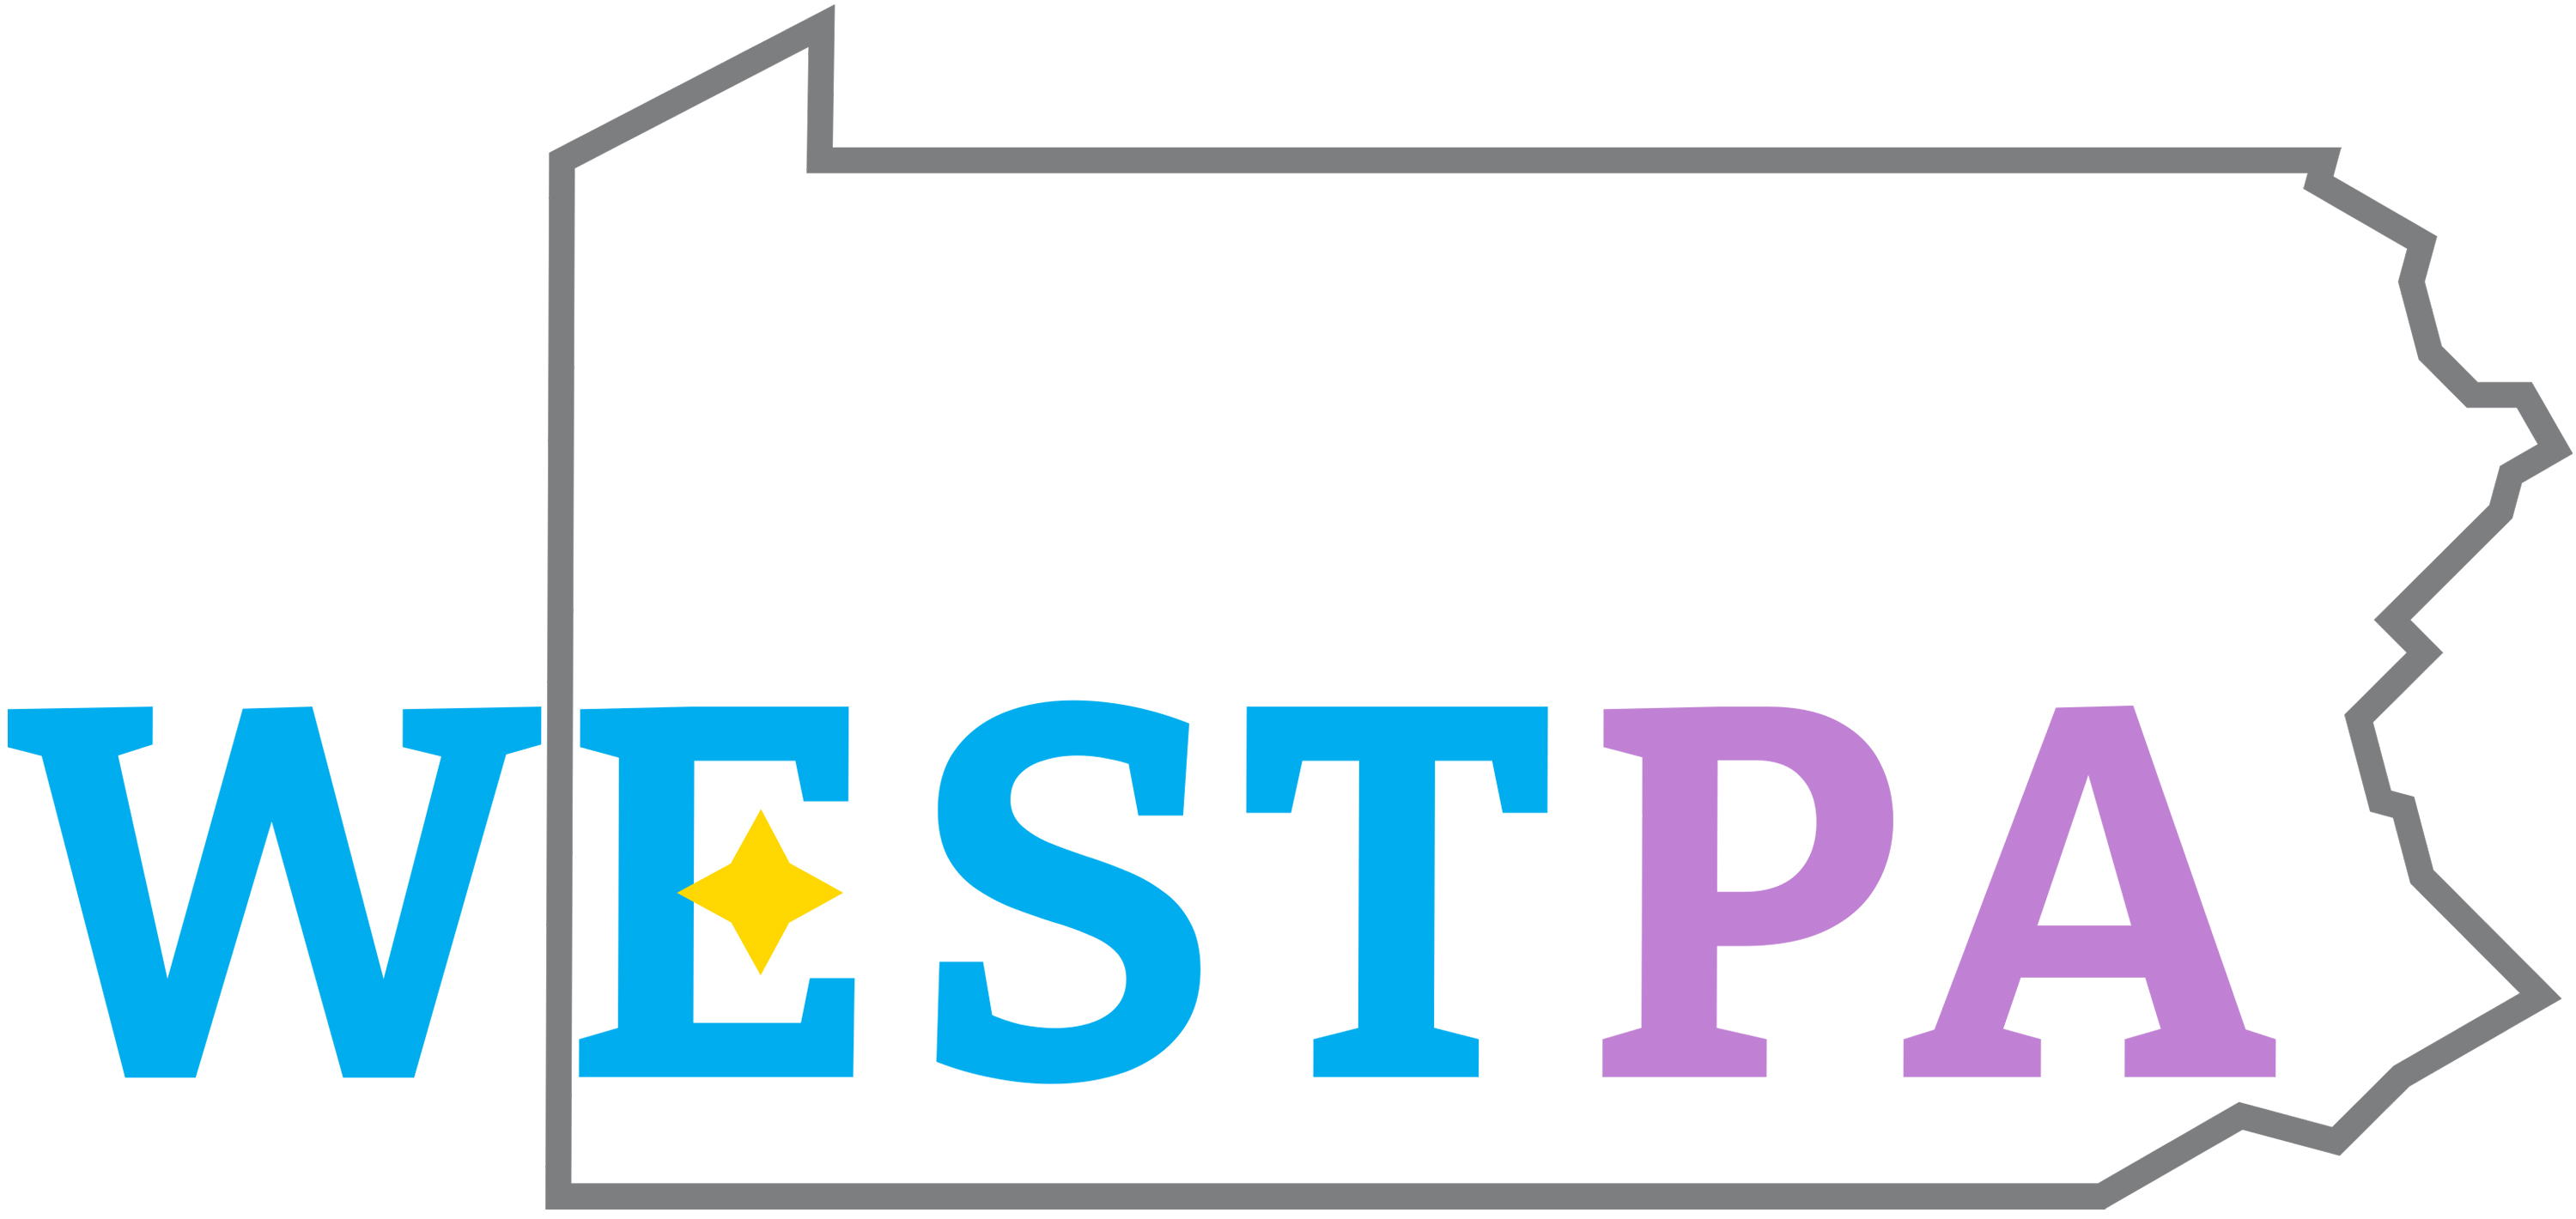 WESTPA logo